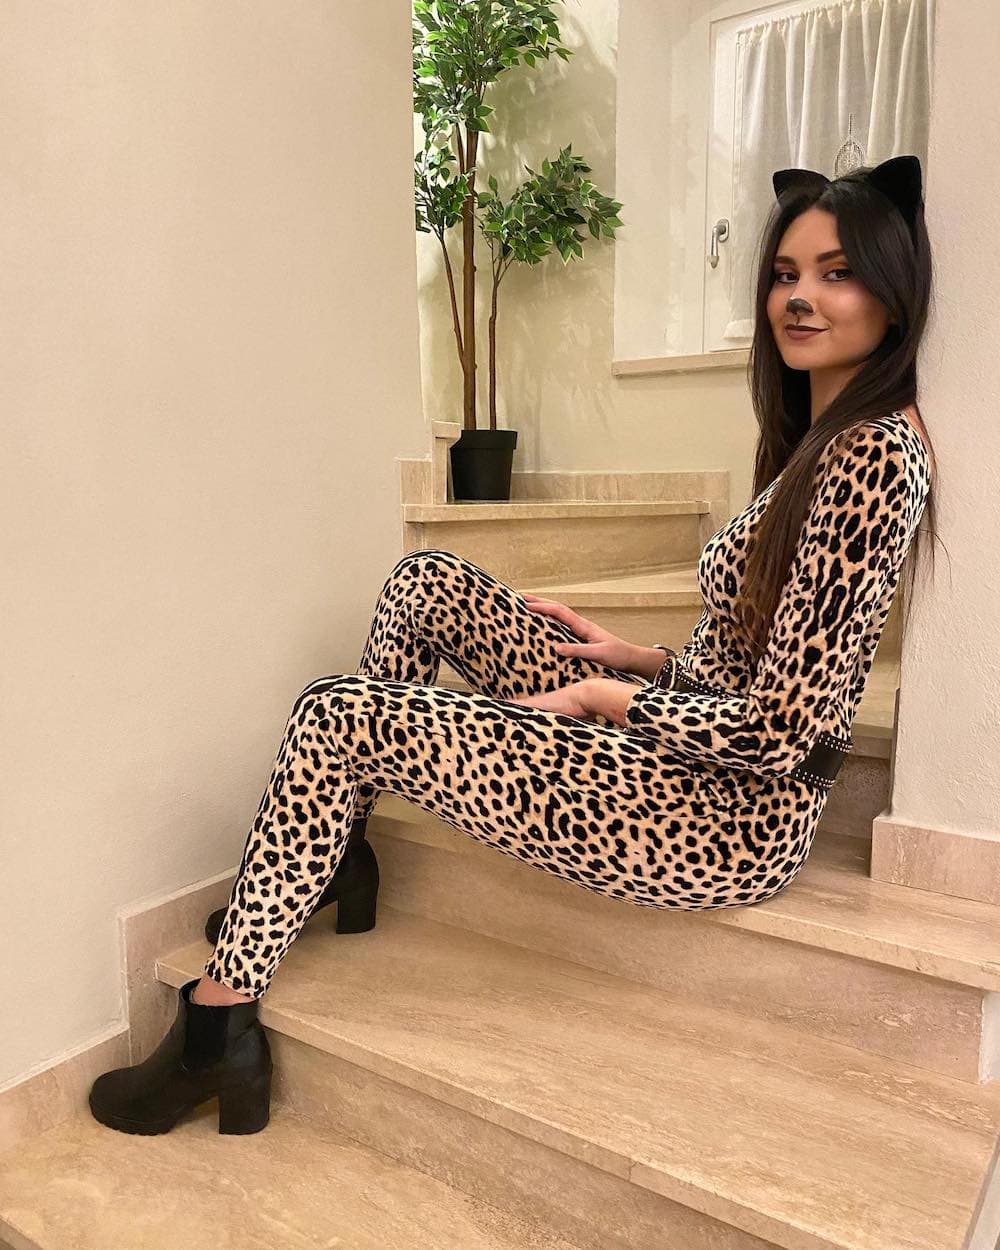 a woman dressed as a cheetah